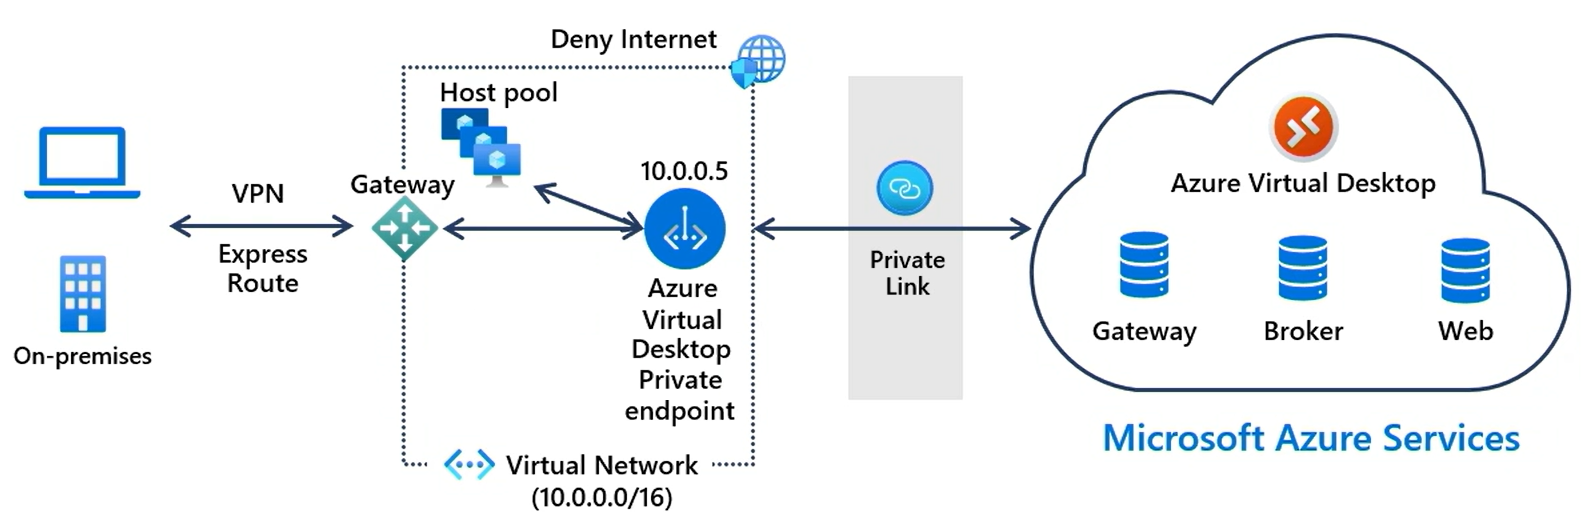 Высокоуровневая схема, показывающая Приватный канал подключение локального клиента к службе виртуального рабочего стола Azure.